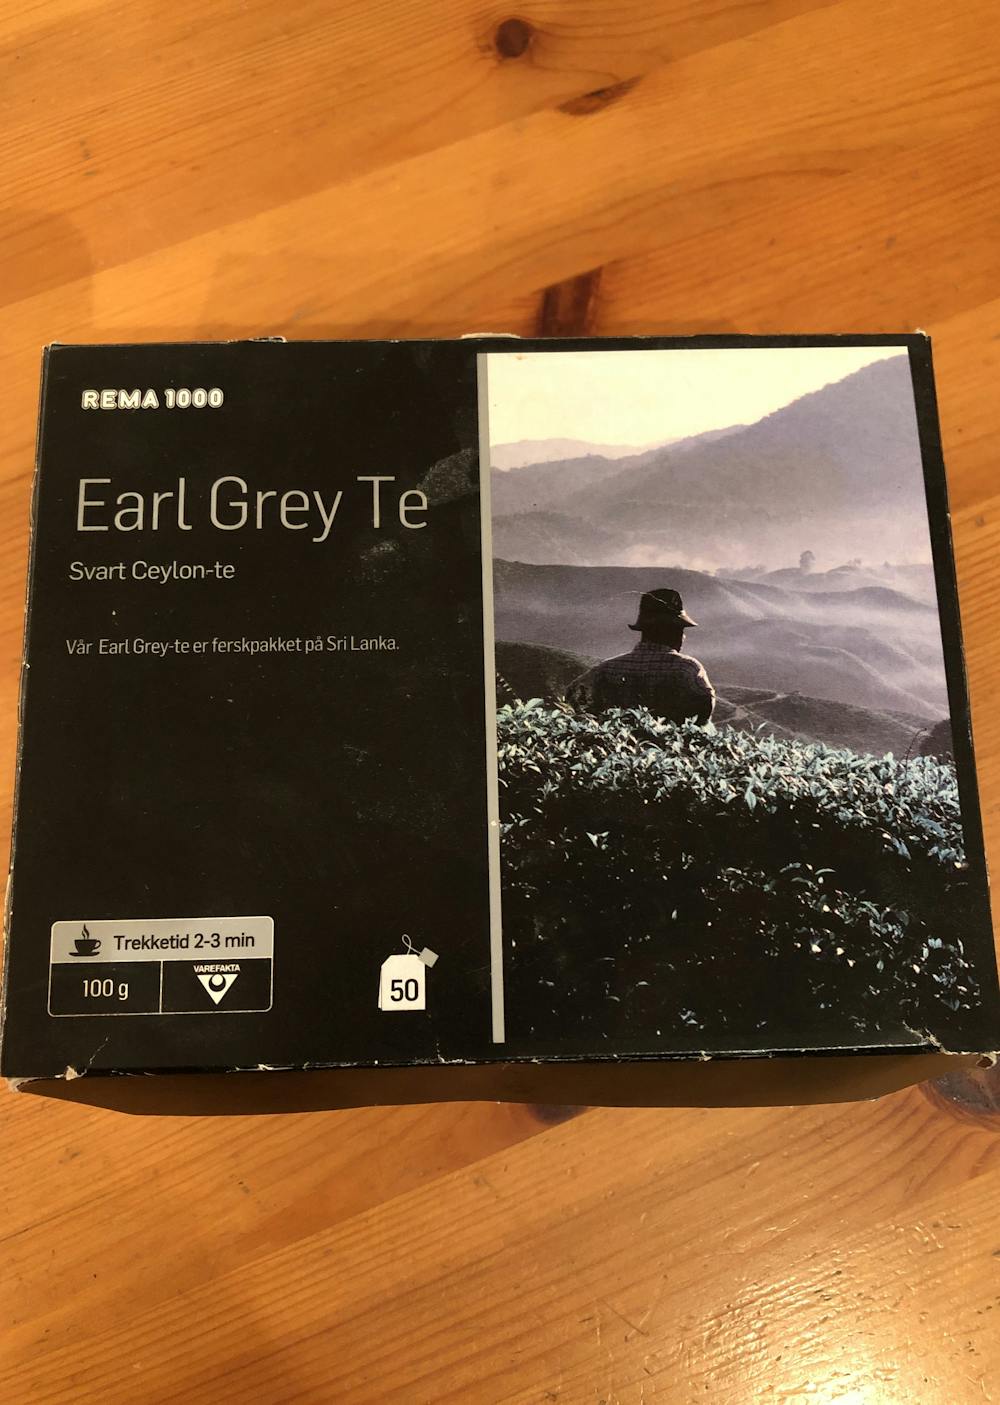 Earl grey te, Rema 1000